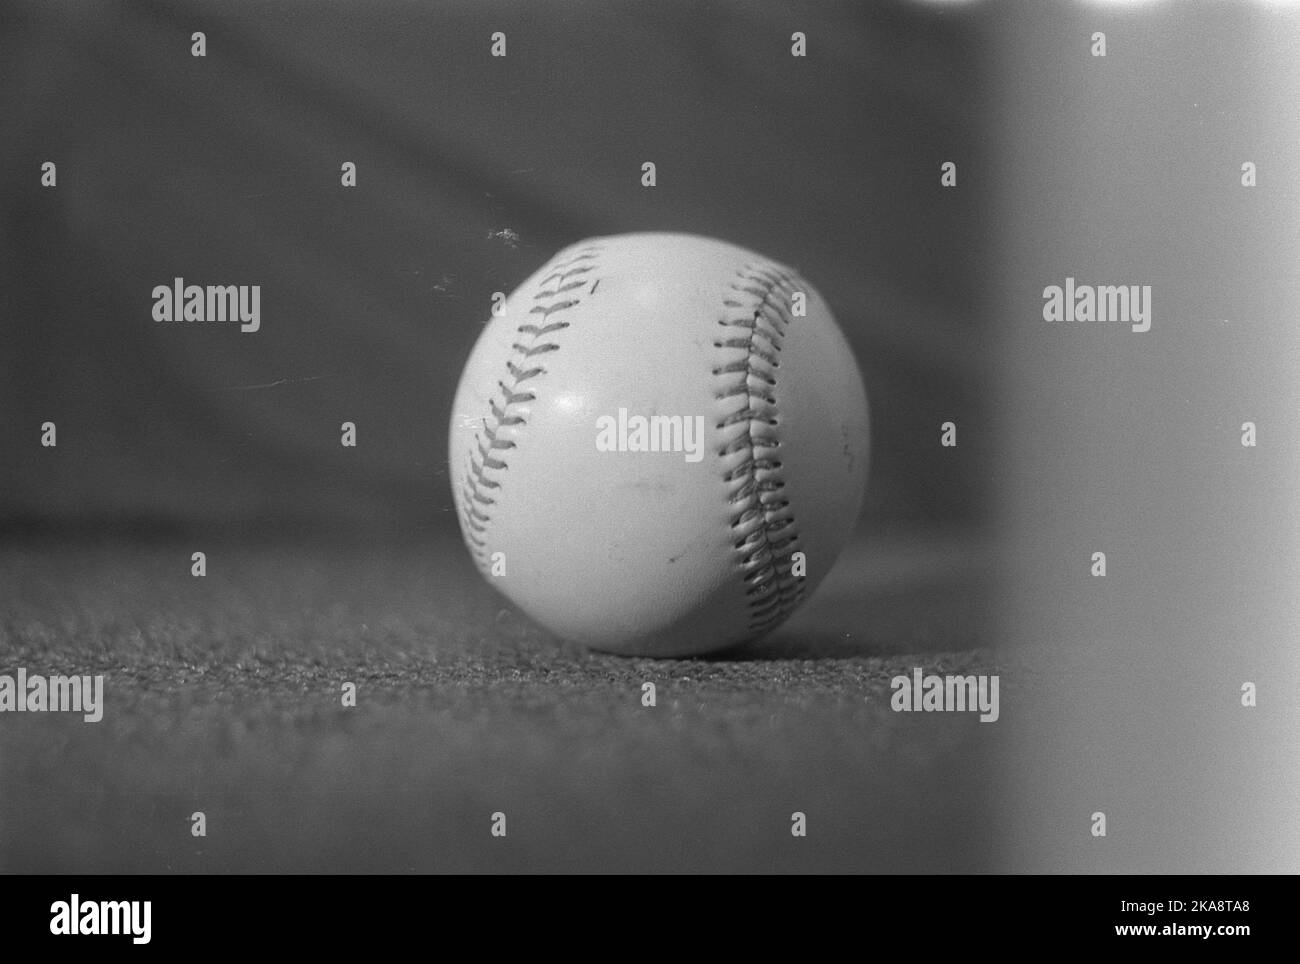 Une photo en niveaux de gris d'une balle de baseball sur une surface plane Banque D'Images